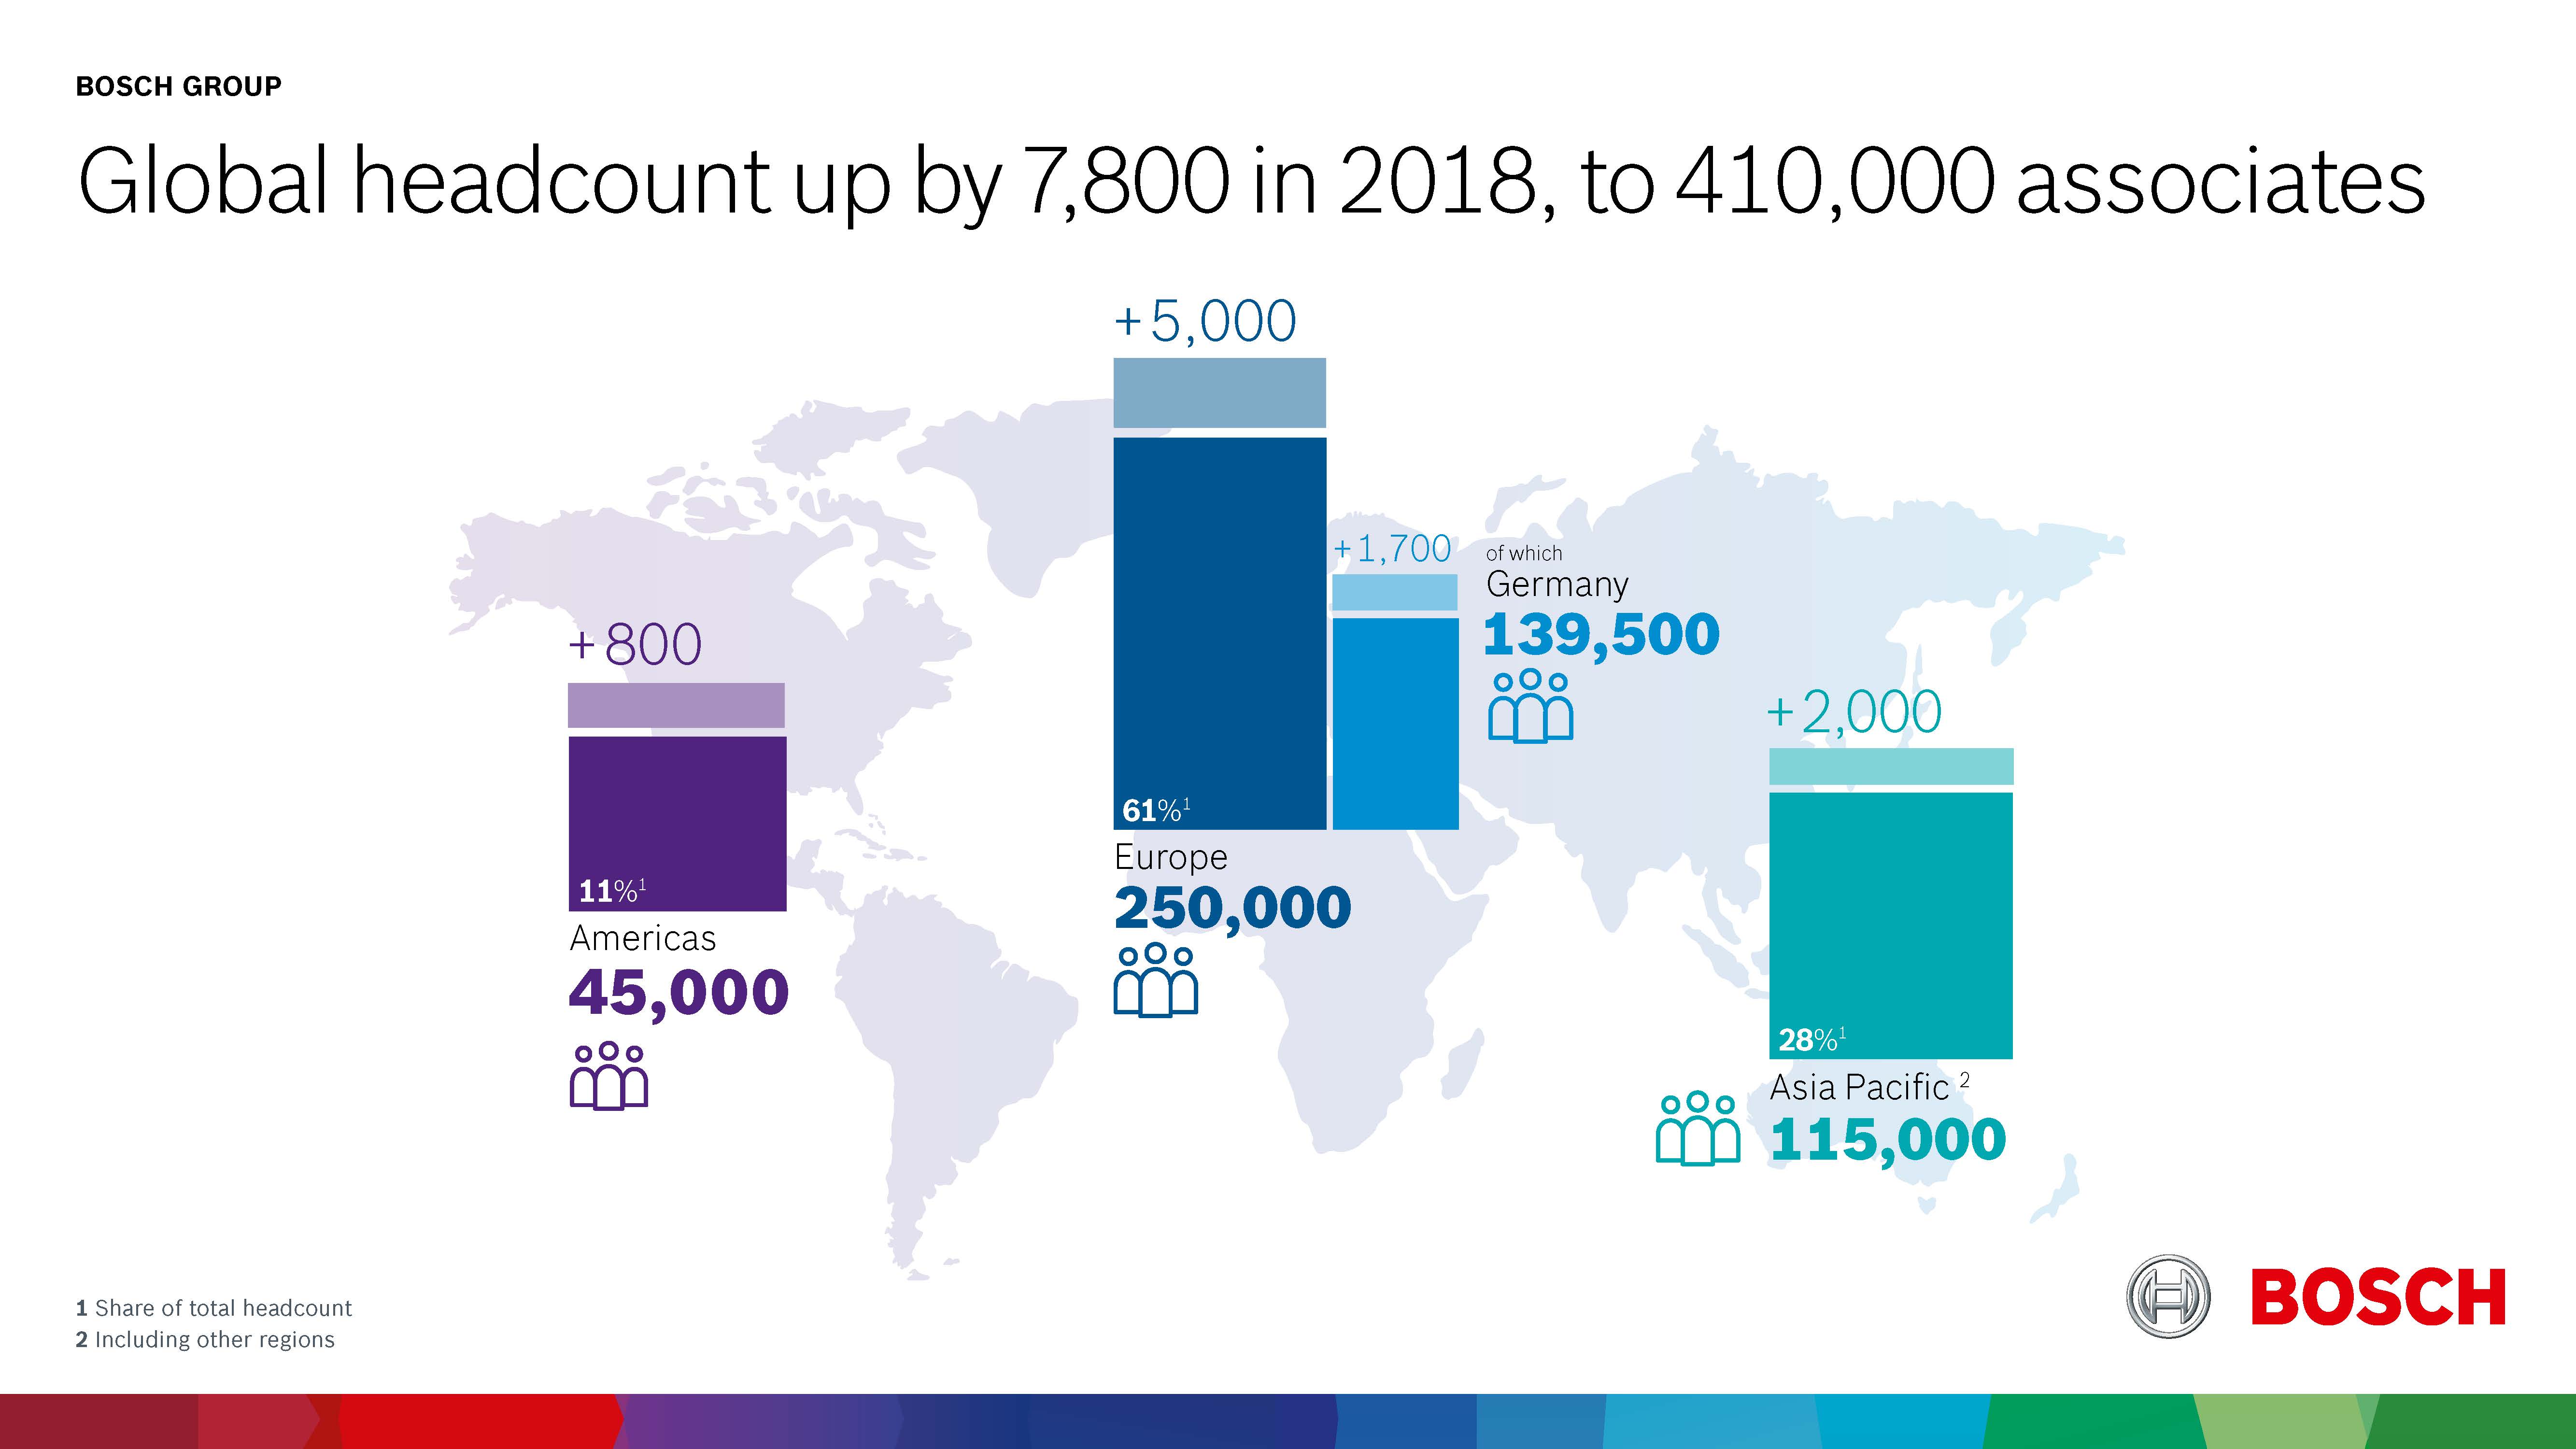 Bosch Group zaměstnávala k 31. prosinci 2018 po celém světě přibližně 410 000 lidí. To je o 7 800 spolupracovníků více než v předchozím roce.